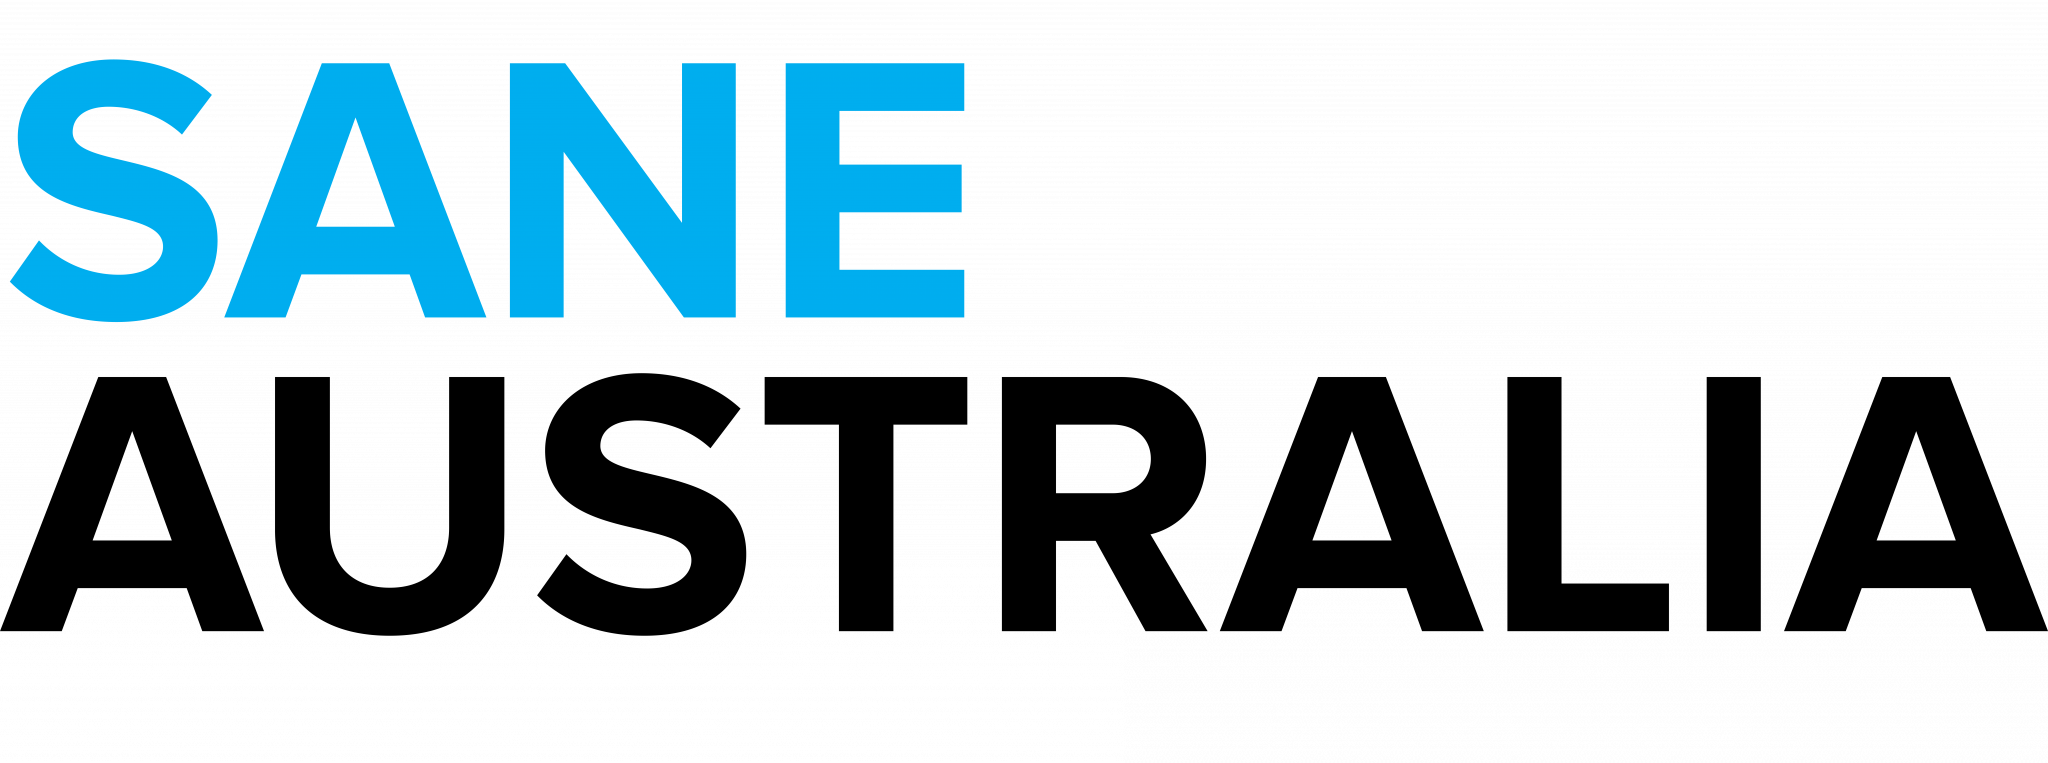 Sane_Logo.png